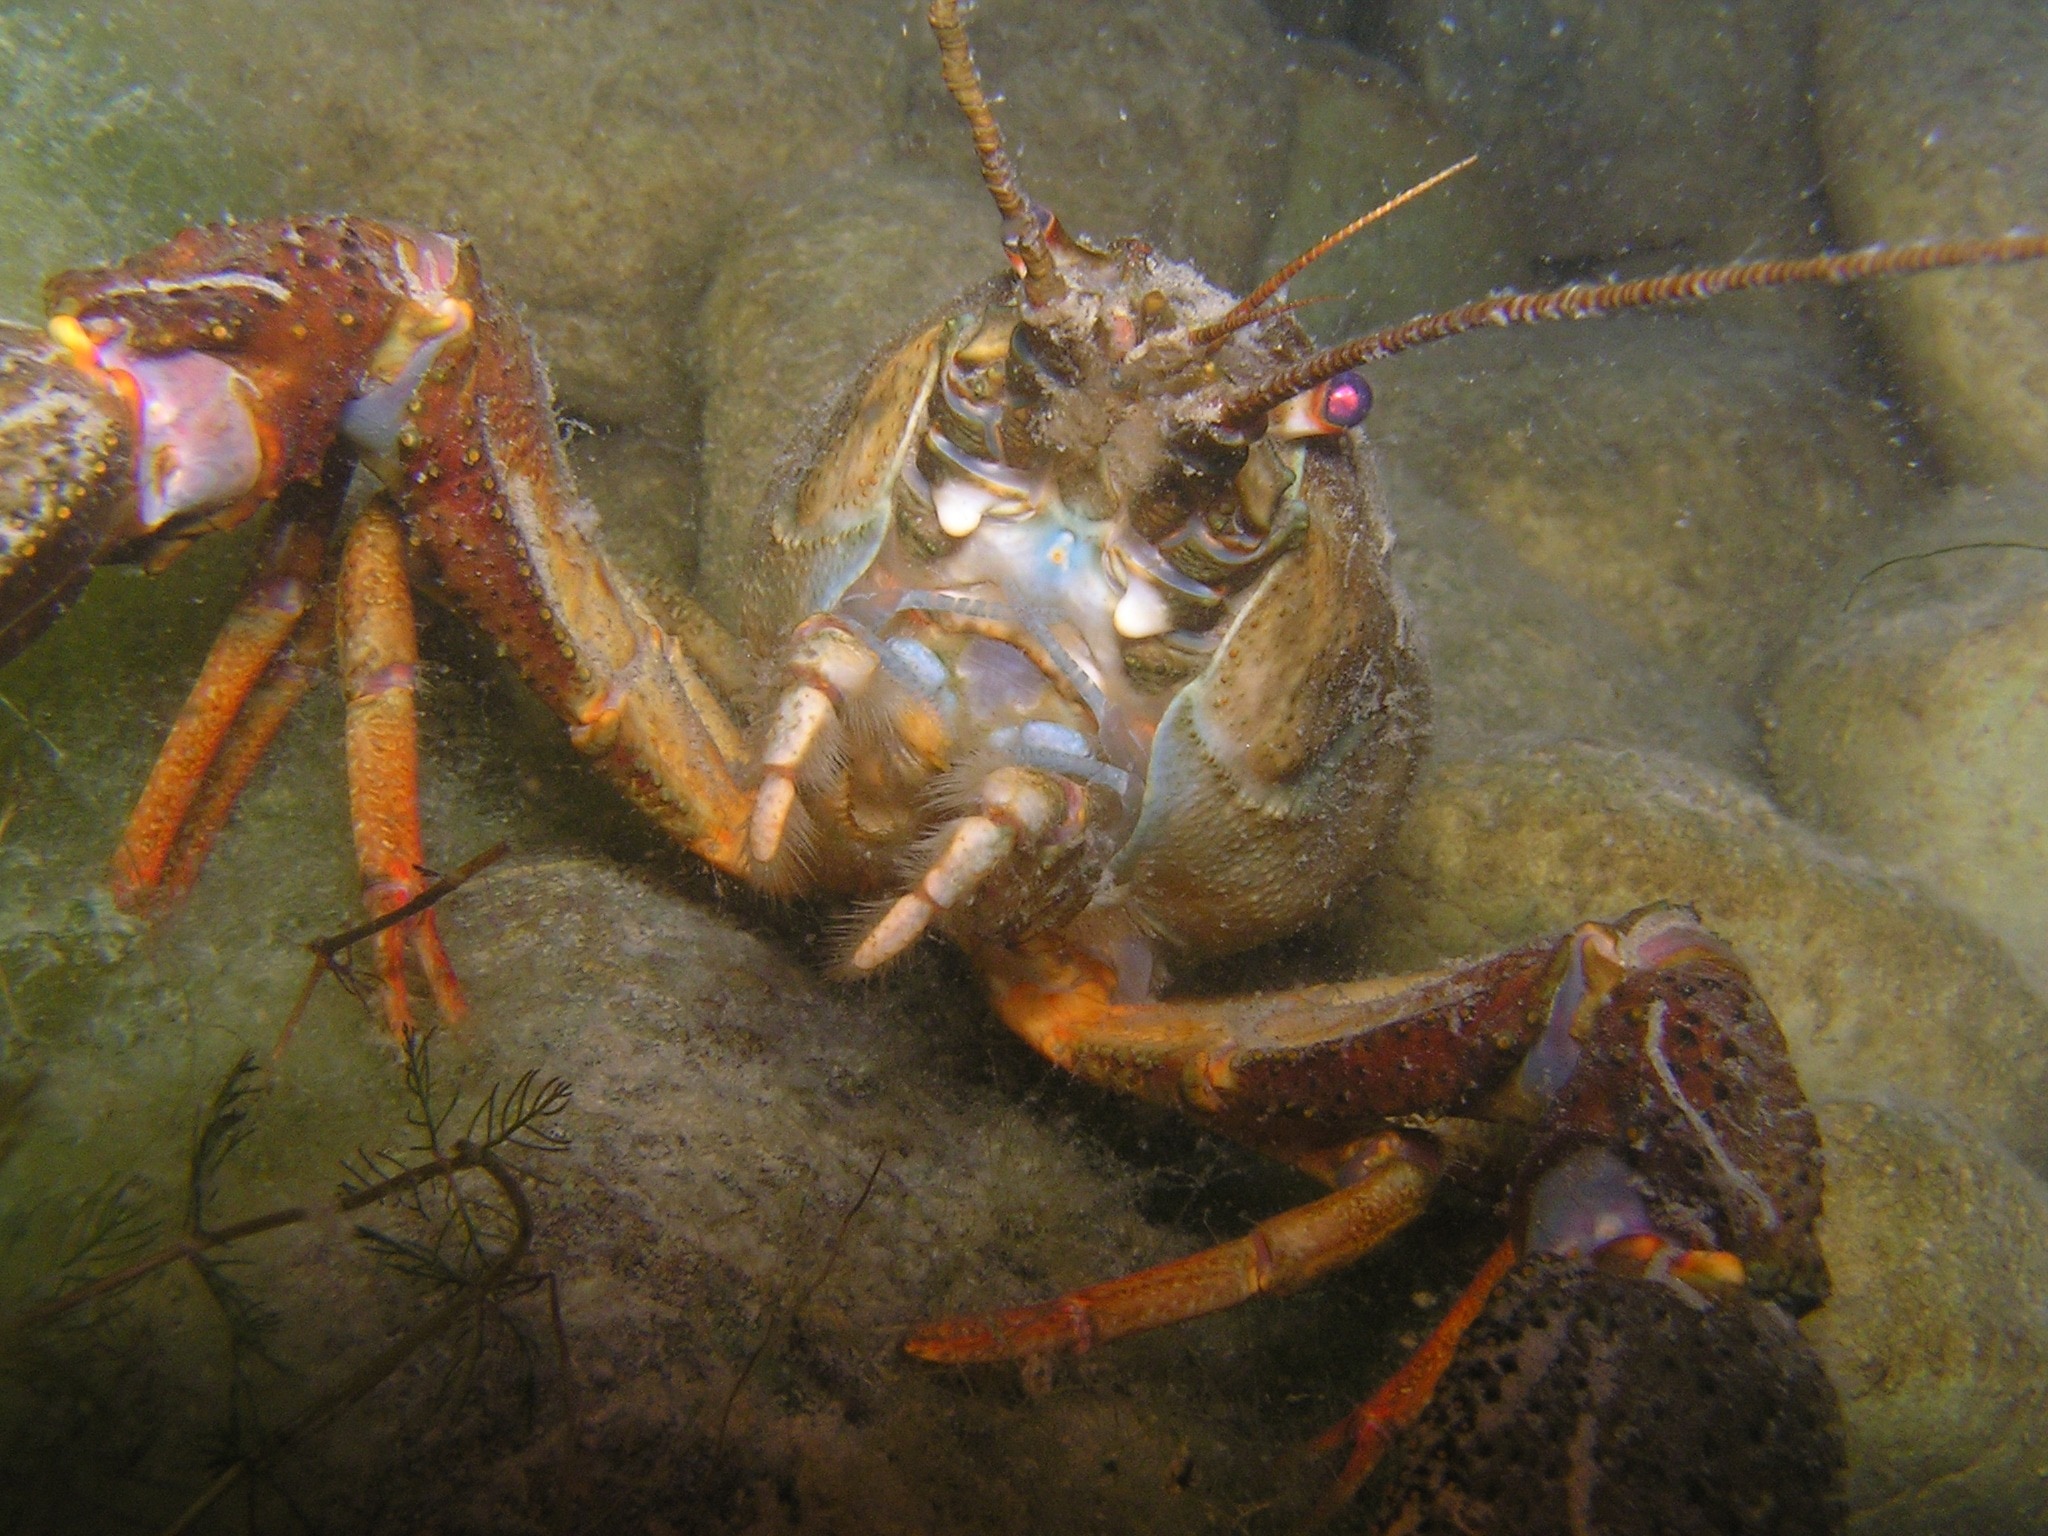 brown lobster